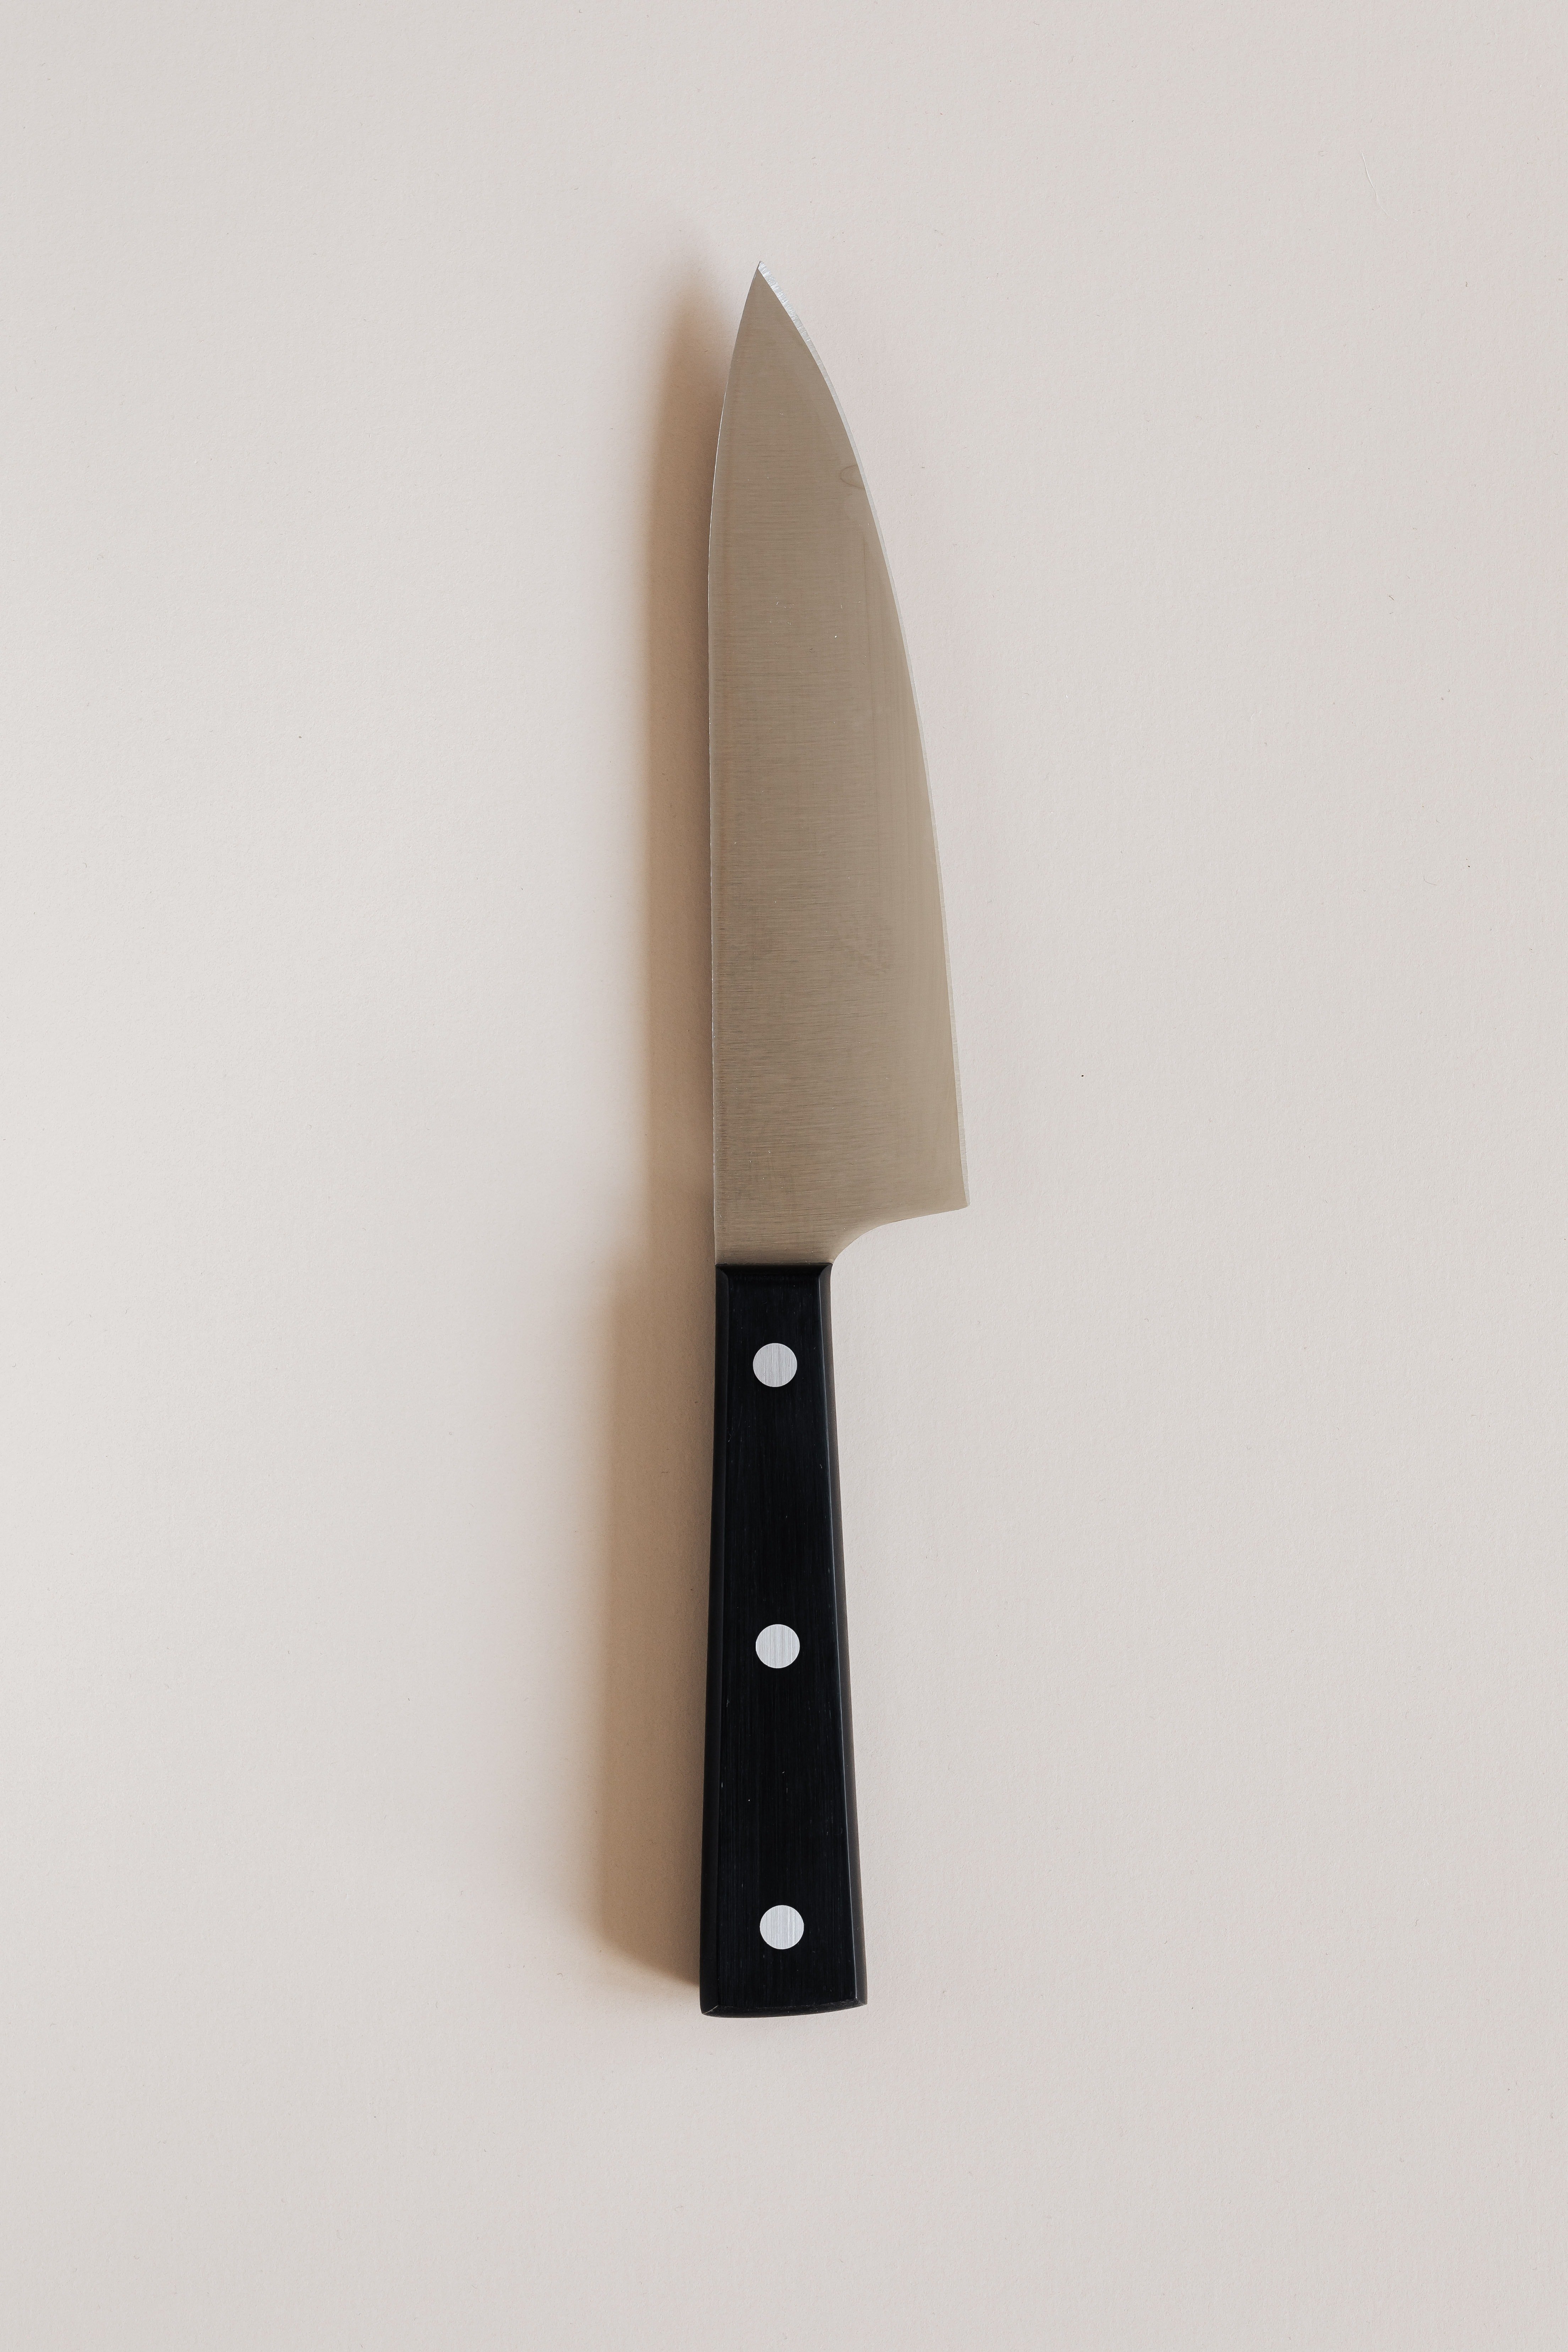 Un couteau de cuisine. | Photo : Pexels